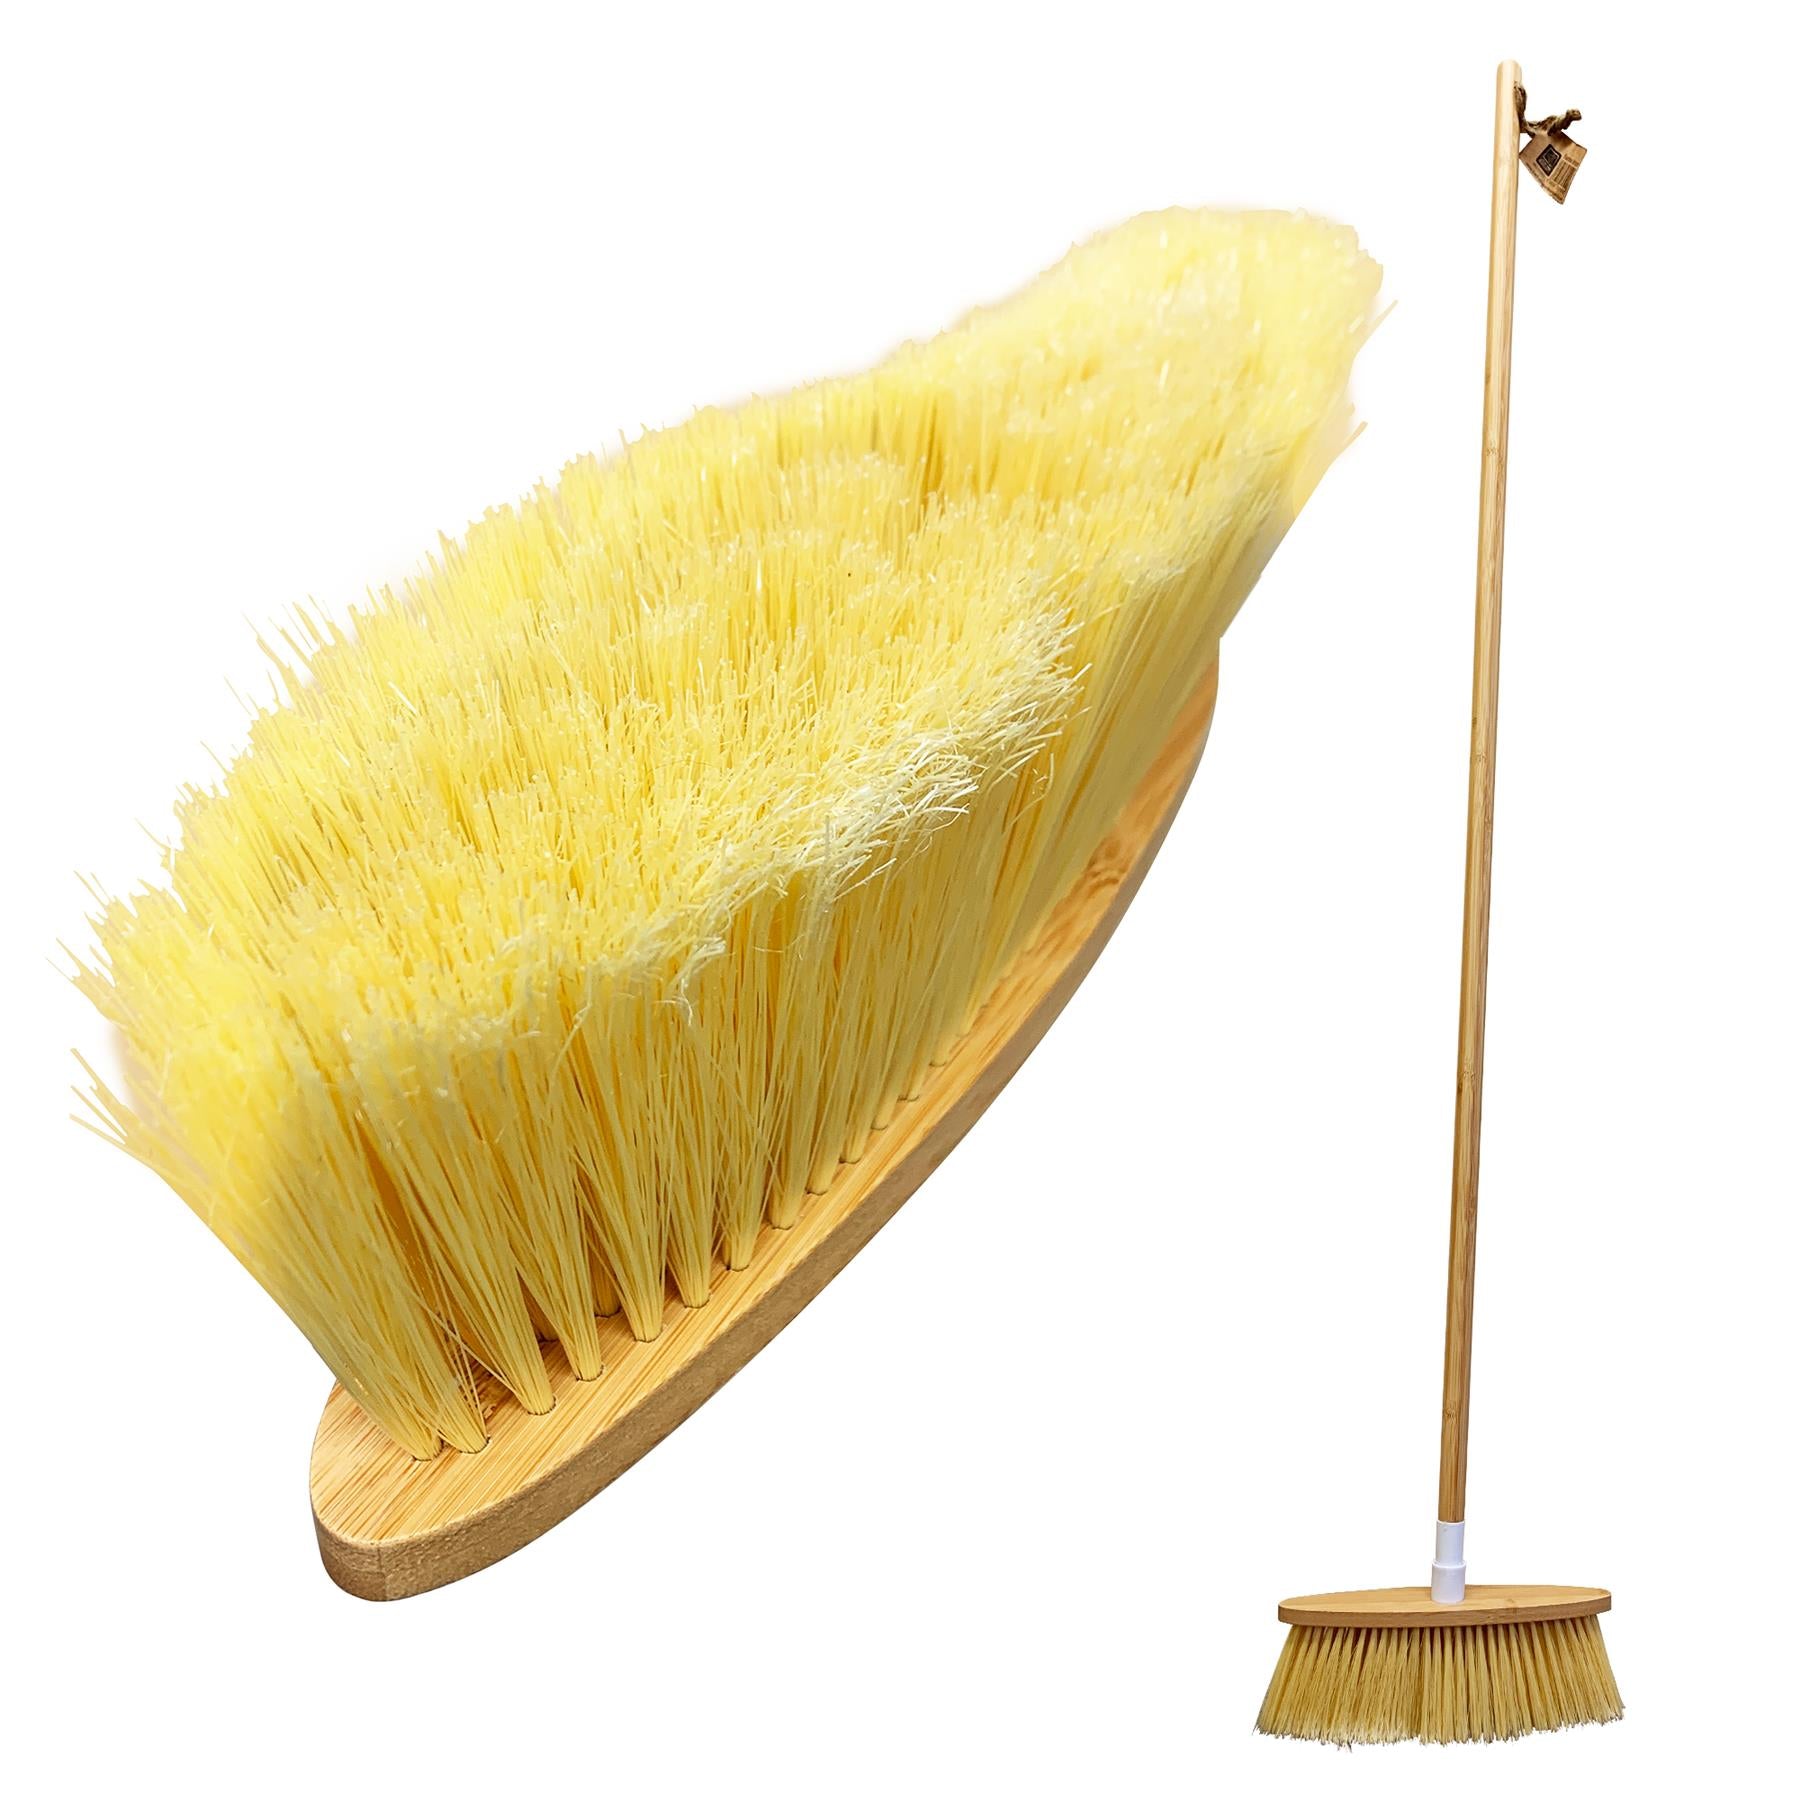 Bamboo Indoor Soft Sweeping Broom